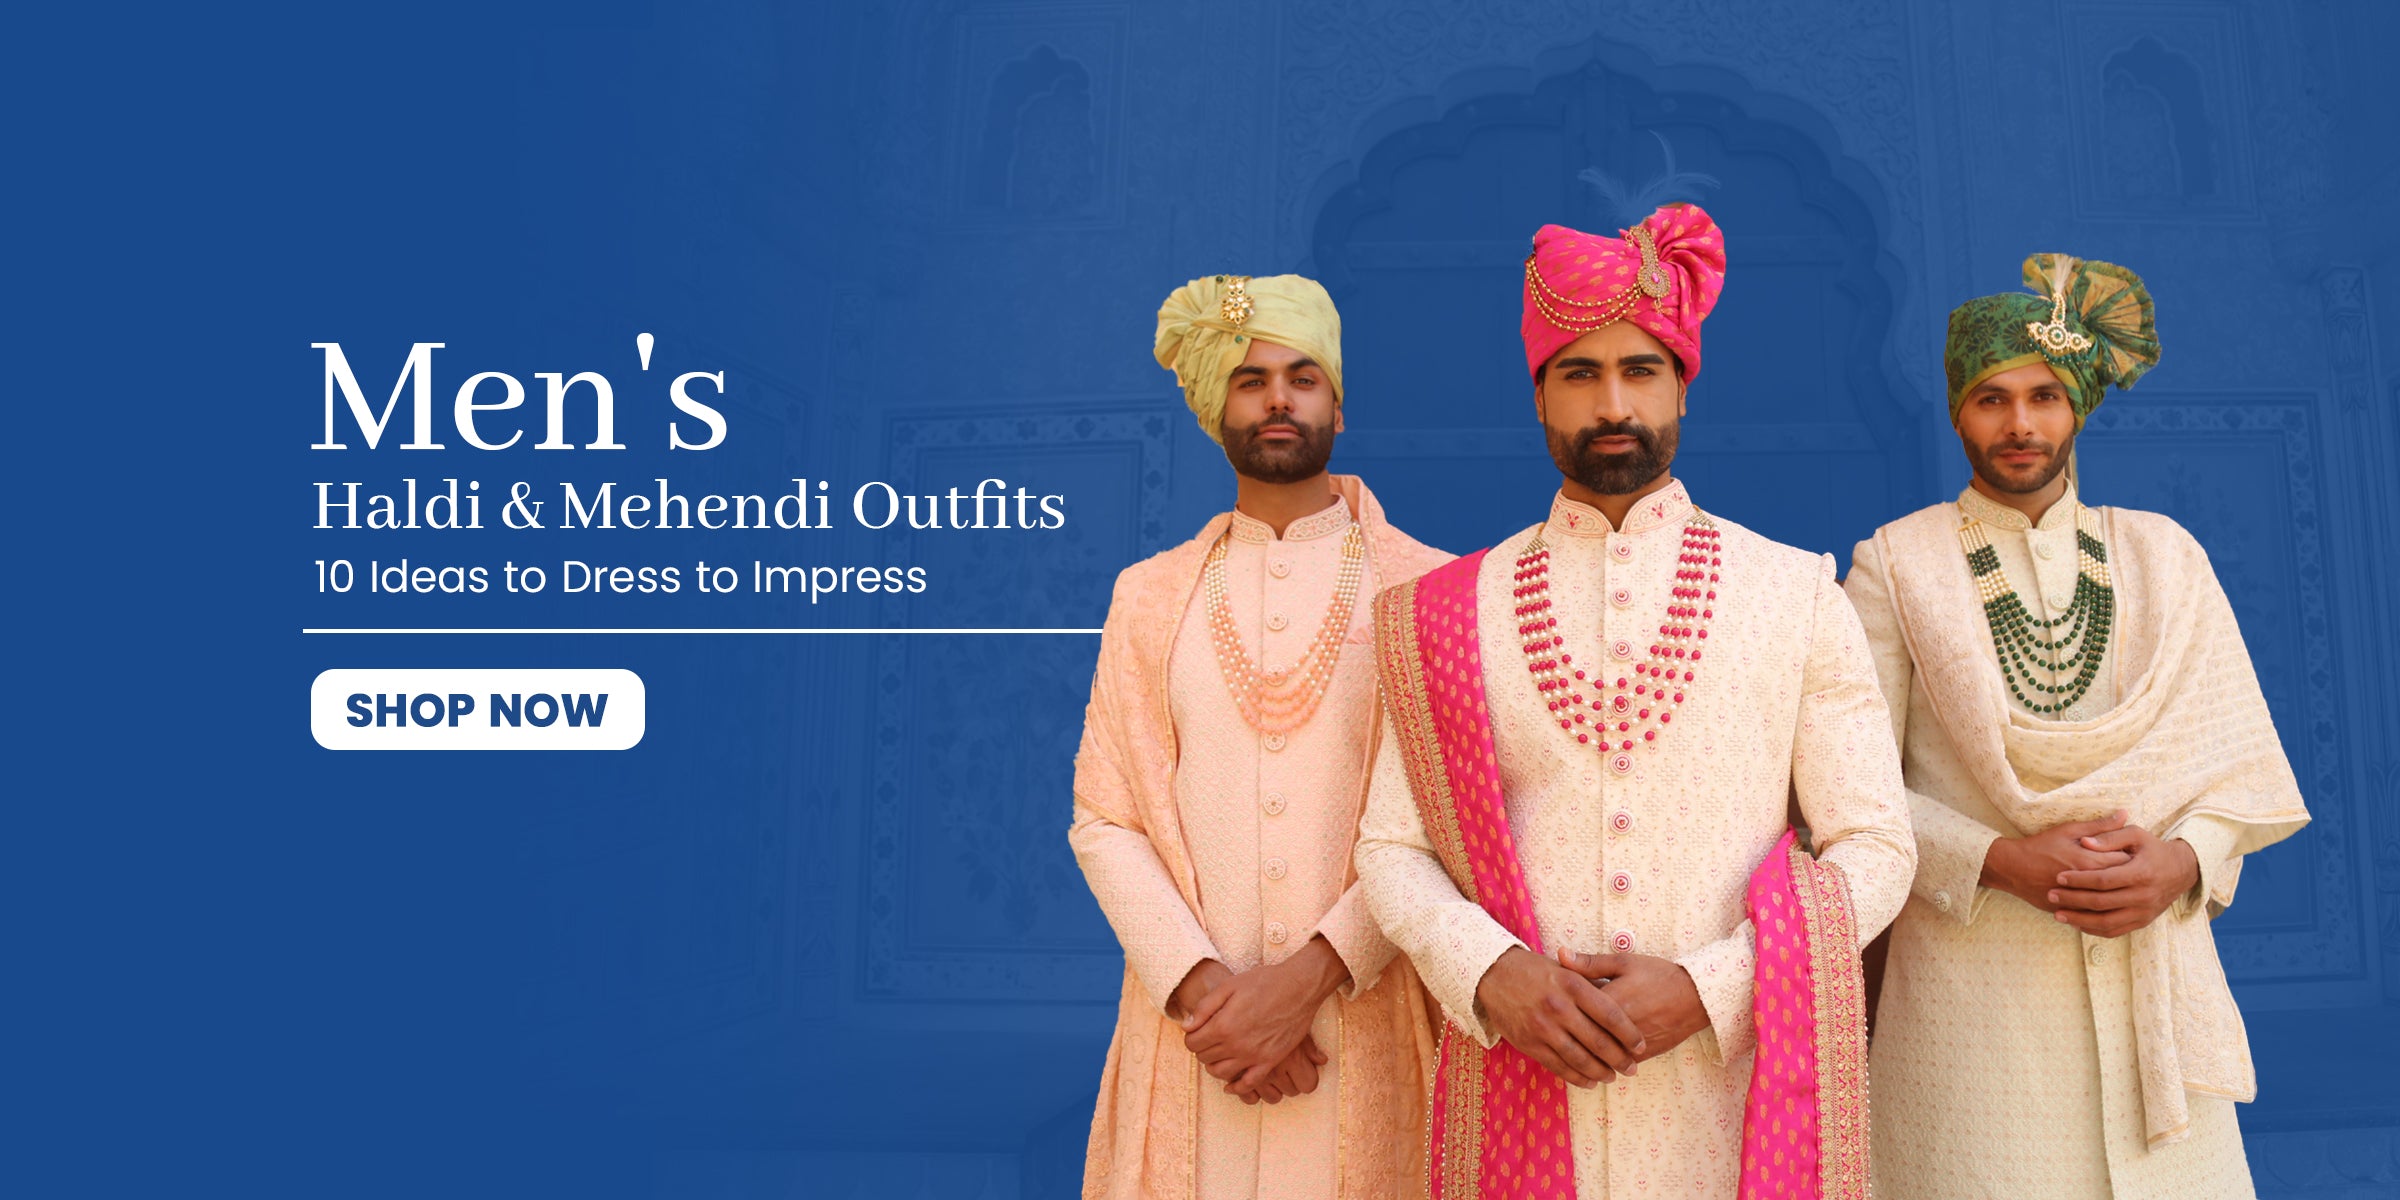 Men's Haldi & Mehendi Outfits: 10 Ideas to Dress to Impress